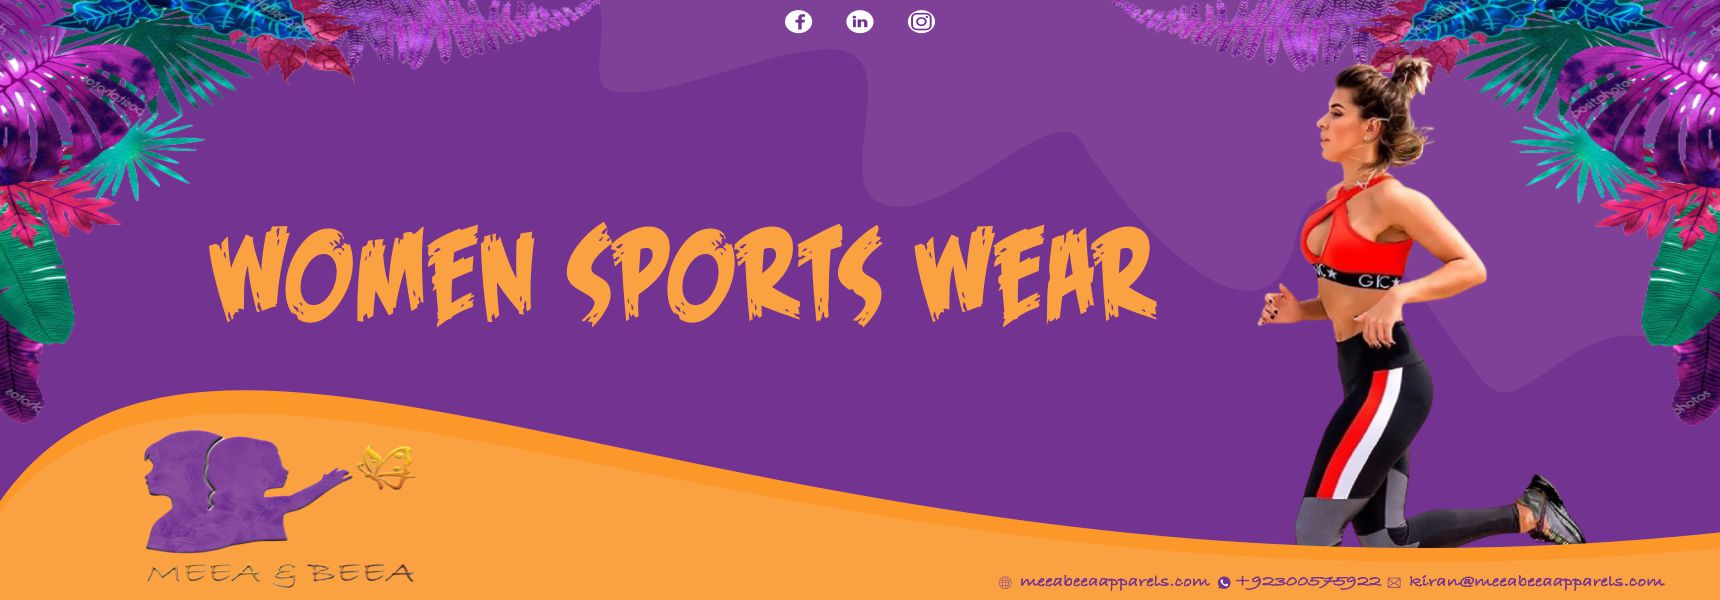 Sports wear